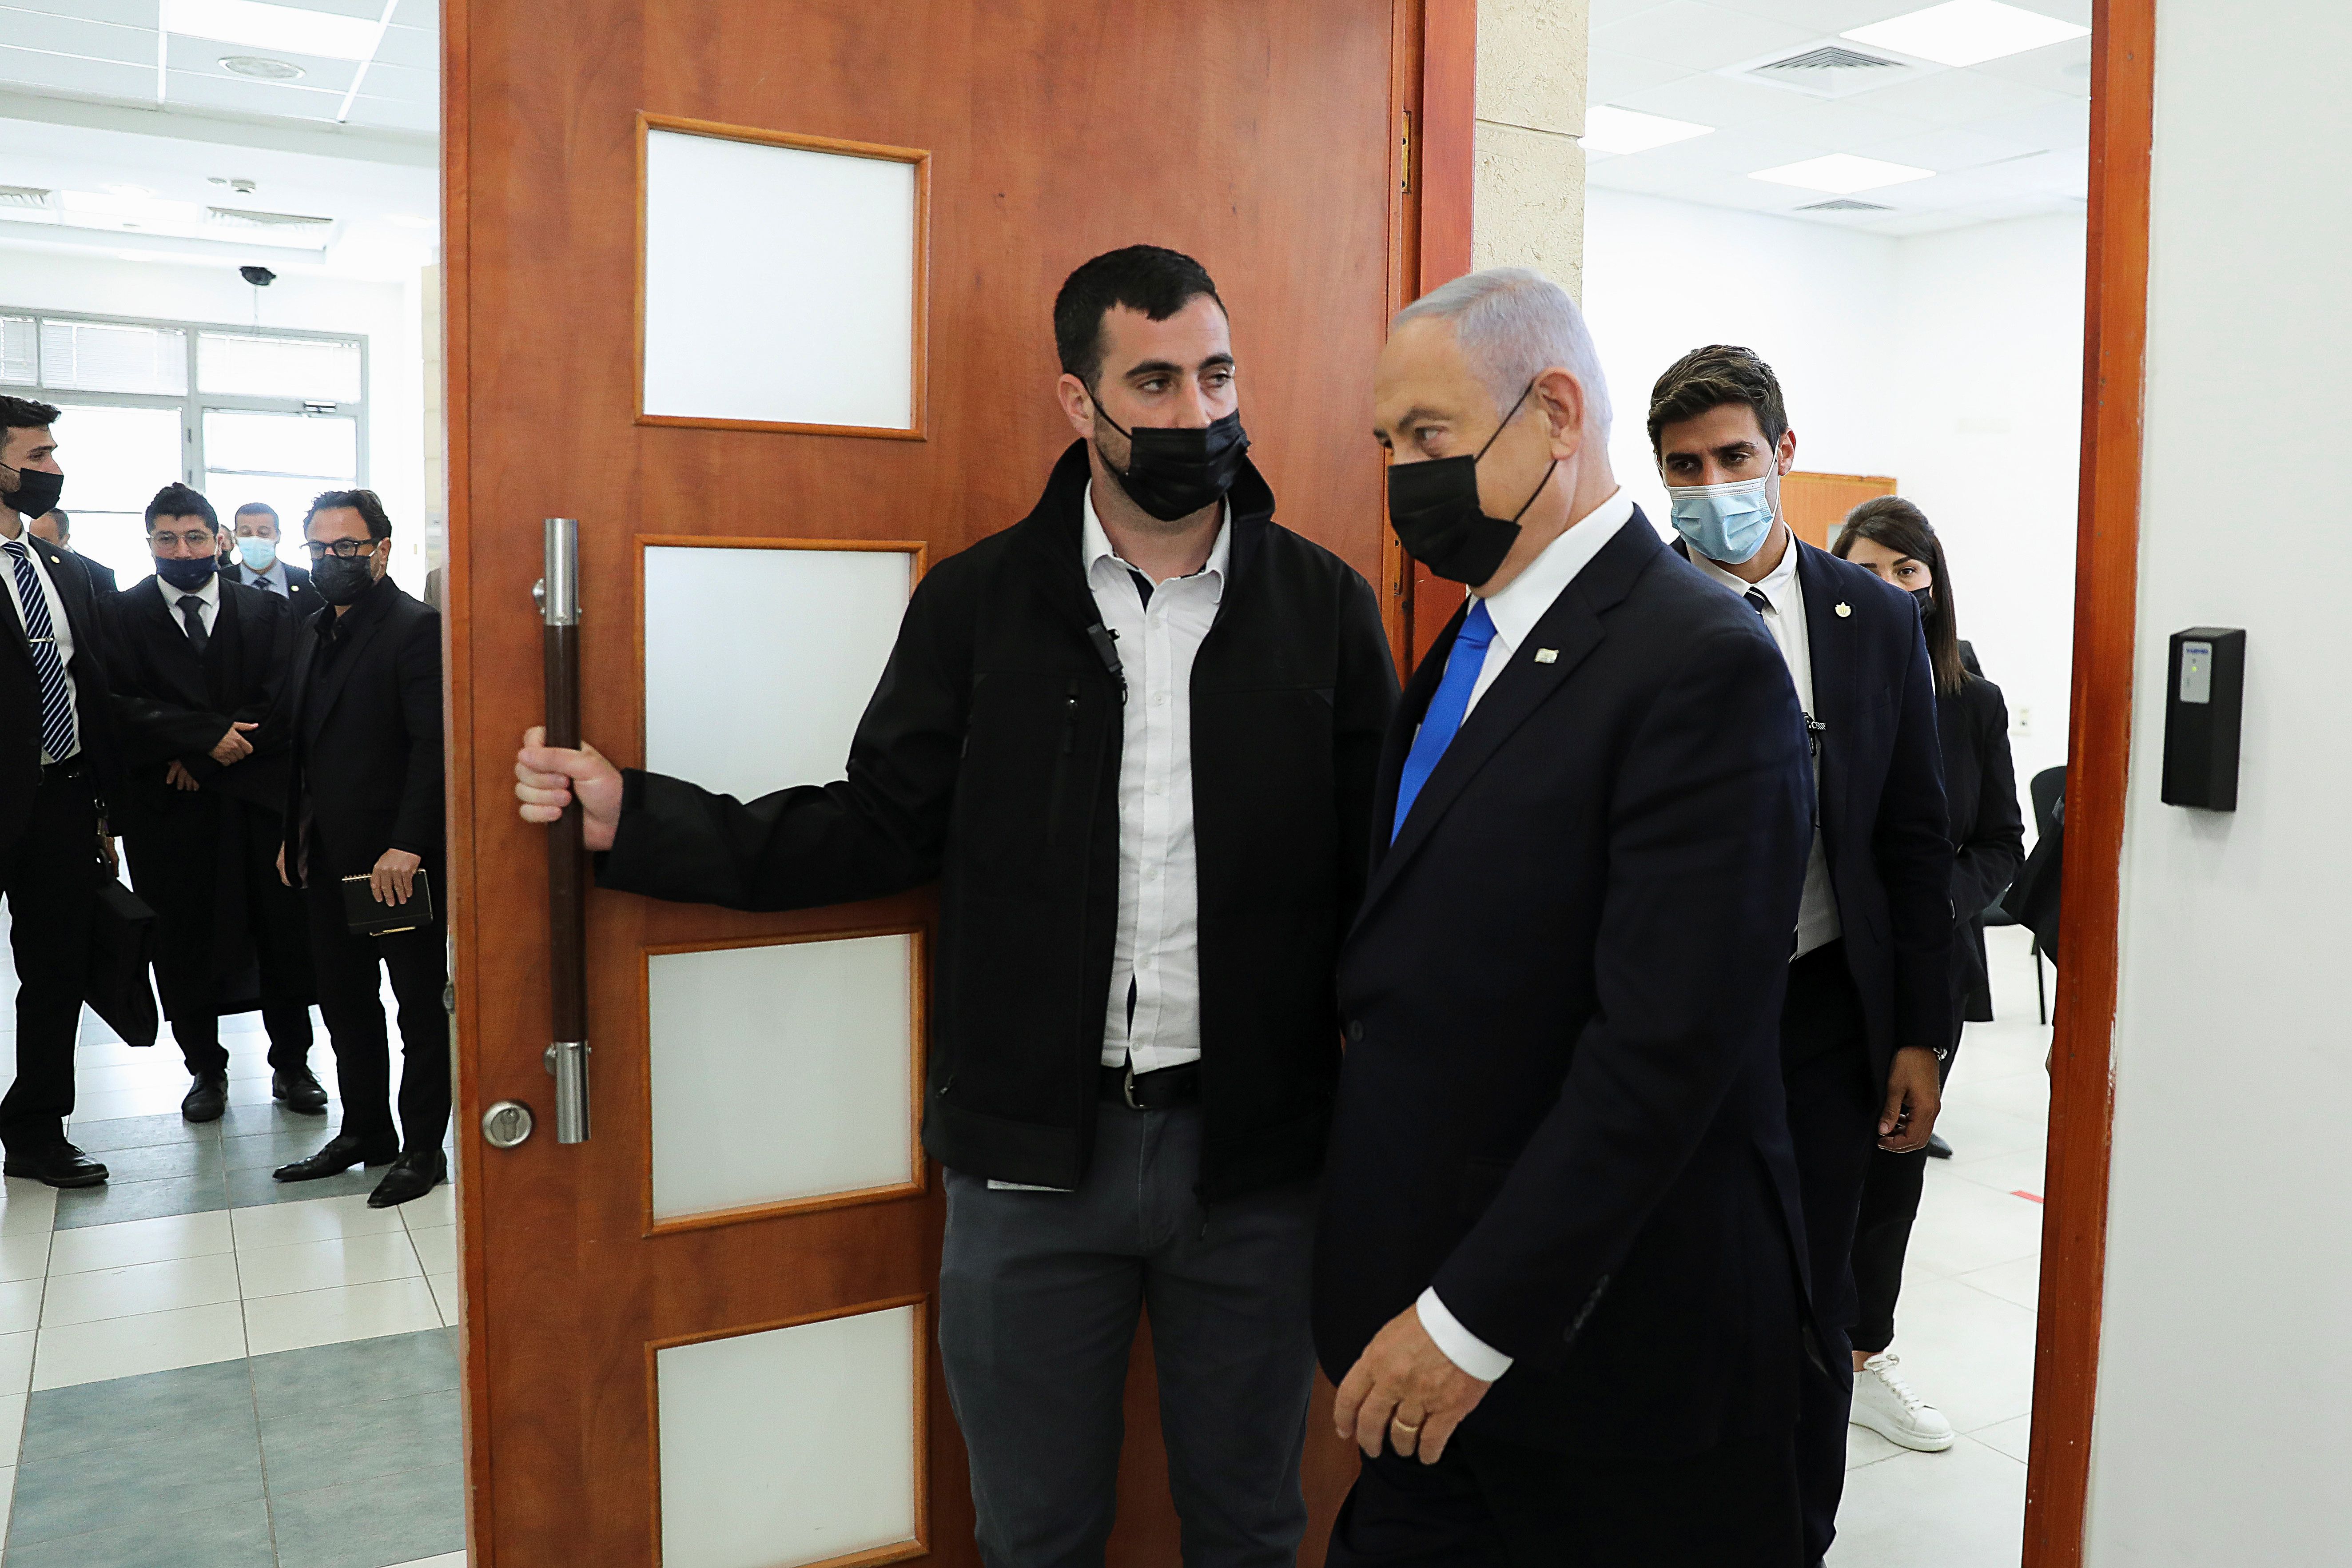 El primer ministro israelí Benjamín Netanyahu, con una máscara facial, abandona la sala del tribunal durante una audiencia tras la reanudación de su juicio por corrupción, en el Tribunal de Distrito de Jerusalén el 5 de abril de 2021. Abir Sultan / Pool vía REUTERS